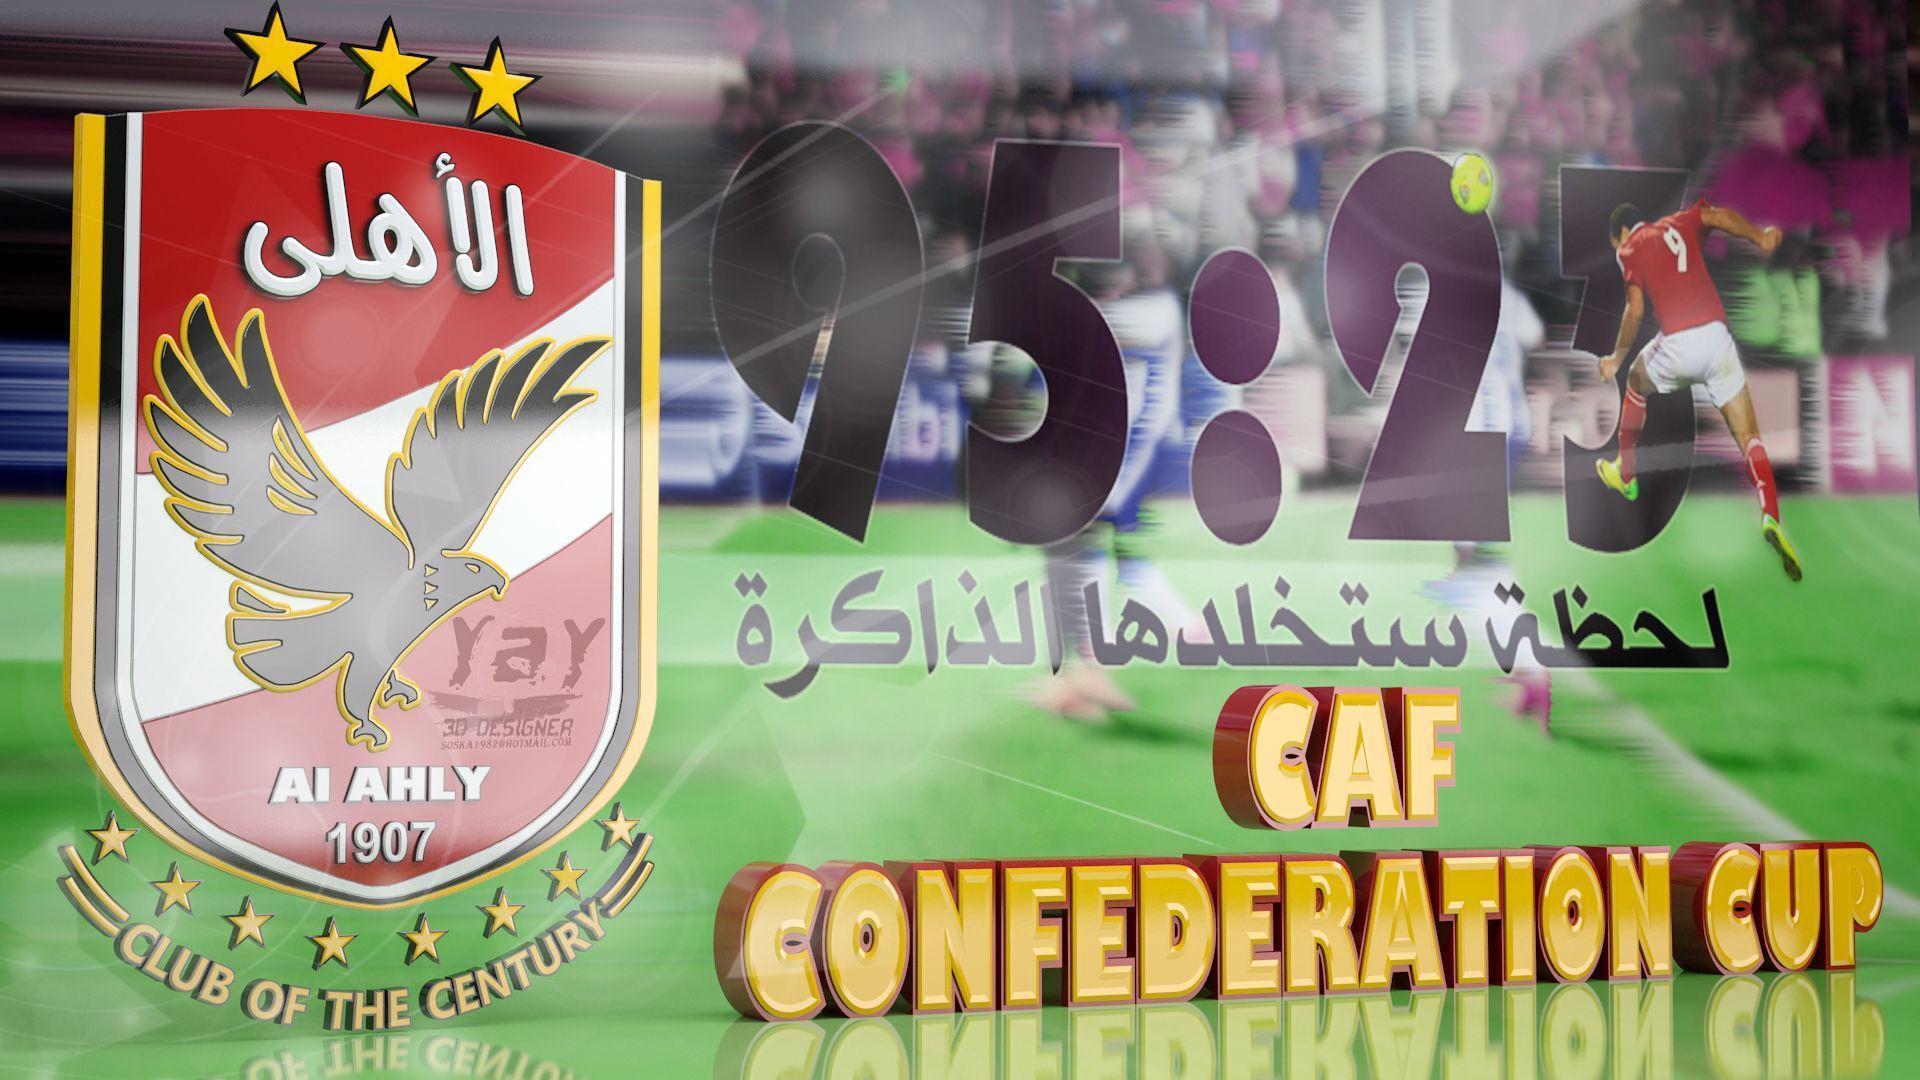 AlAhly Egyptian Football Club Logo 3D